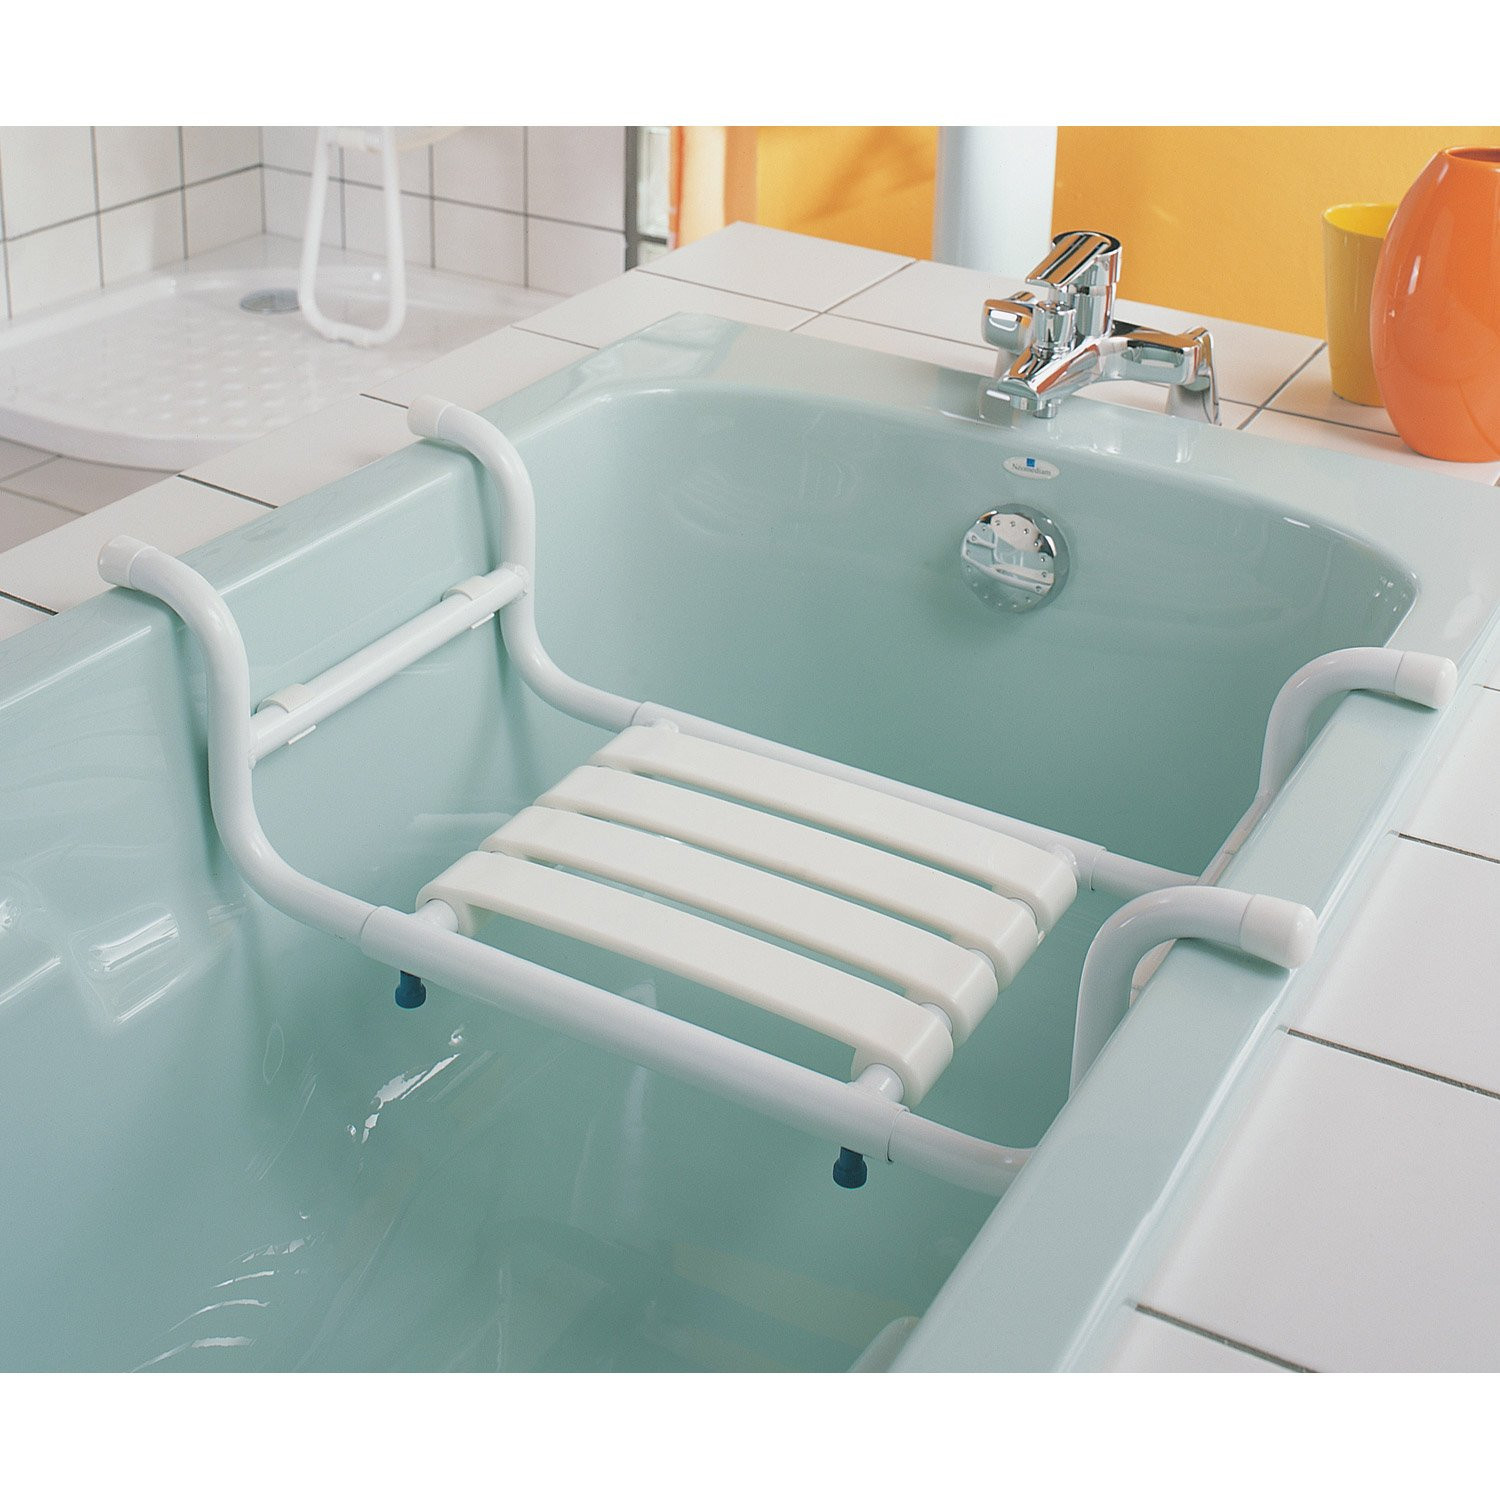 nouveau chaise de bain pour handicape fascinant siege baignoire handicap de bain a poser aluminium 2 re mandations